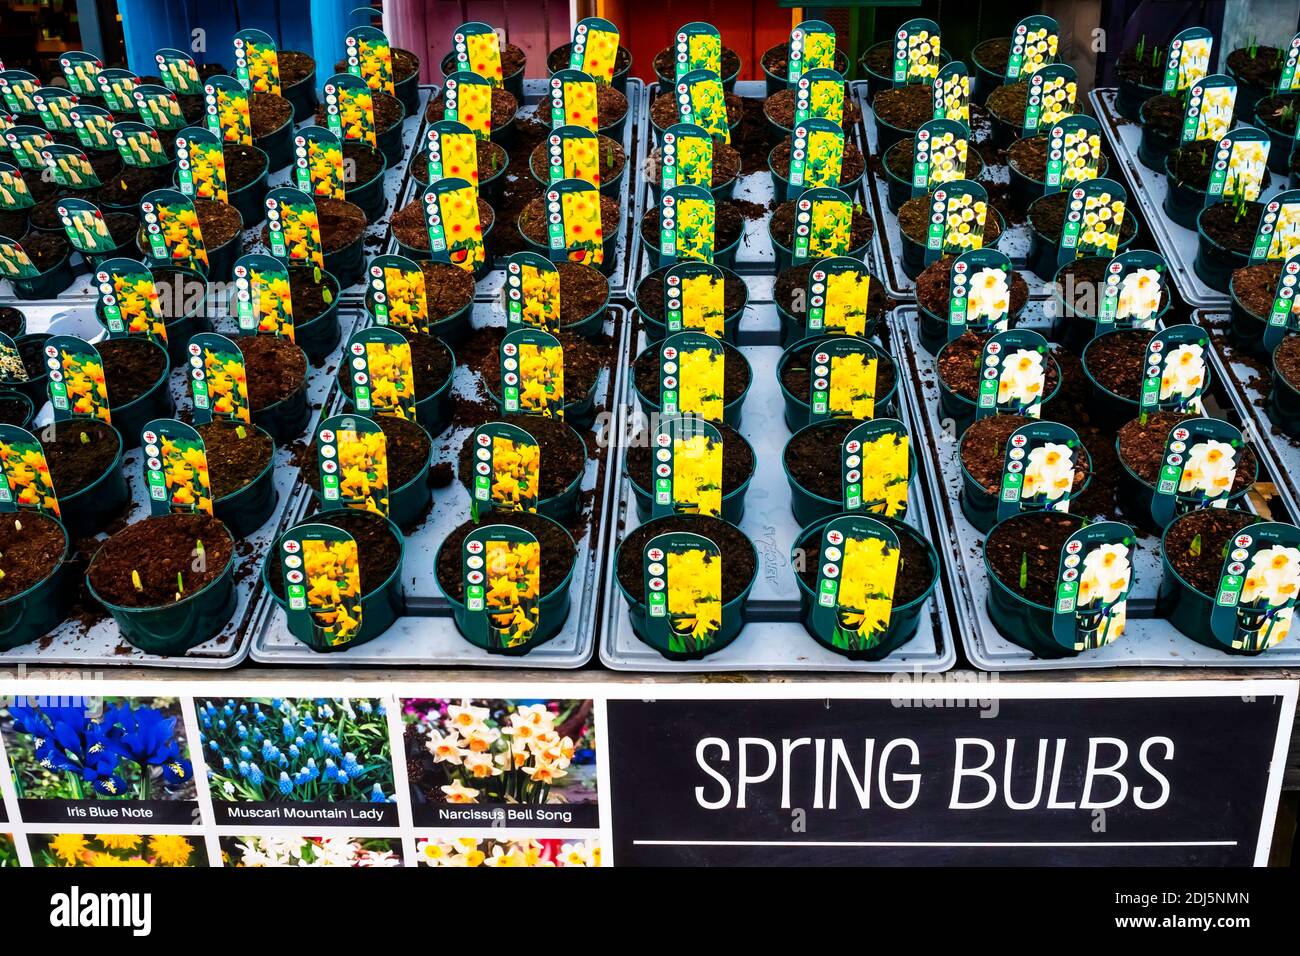 Exposition du centre de jardin ampoules de printemps Narcisse RIP van Winkle, Jumblie et Bell Song à vendre comme plantes de literie pour les semis de printemps Banque D'Images